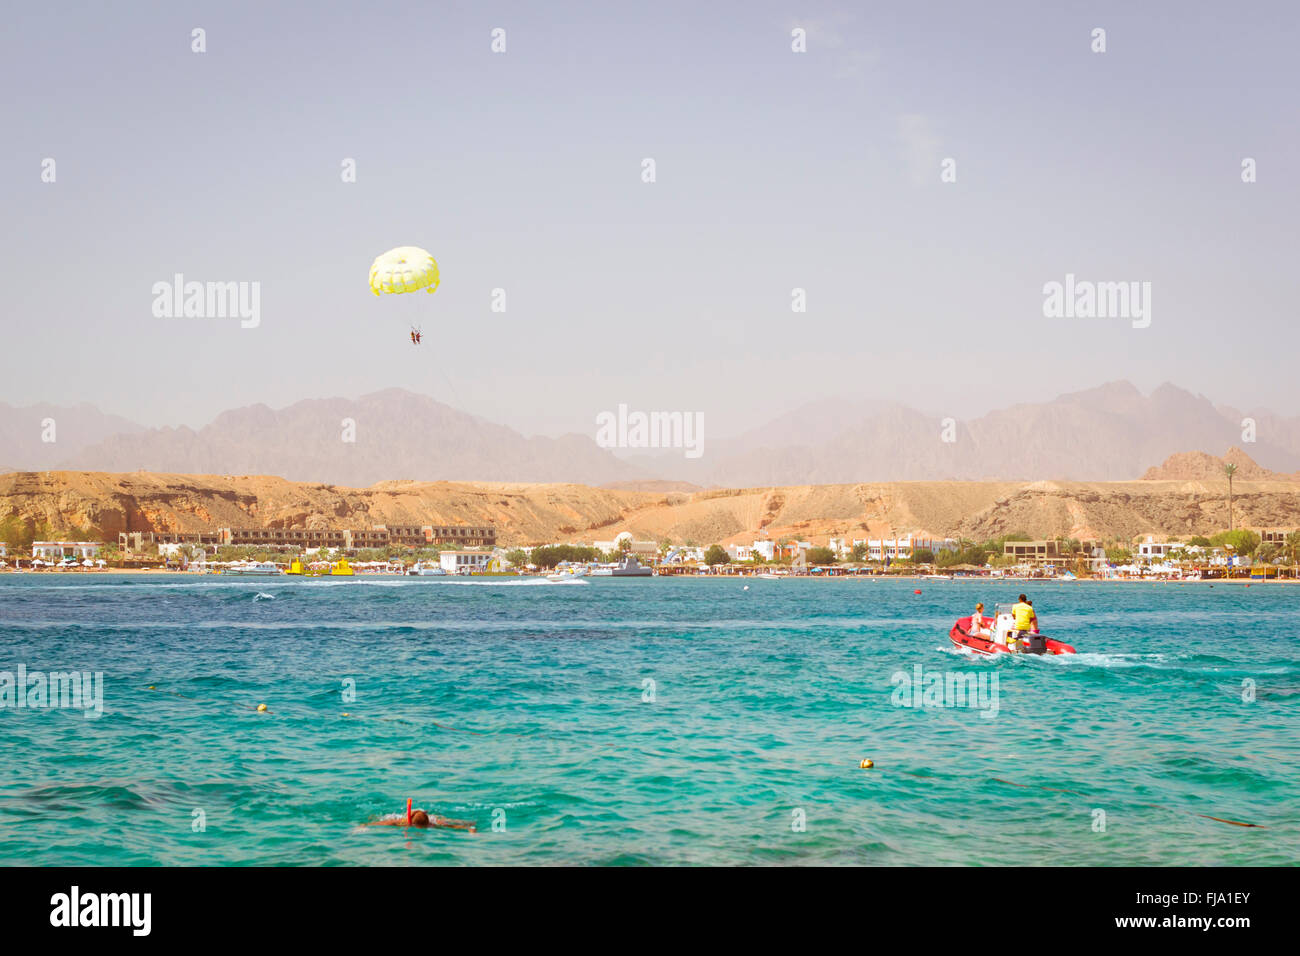 SHARM EL SHEIKH, Egitto - 23 febbraio 2014: il paracadutismo sopra un mare, traino da una barca: coppia felice è volare su un paracadute Foto Stock